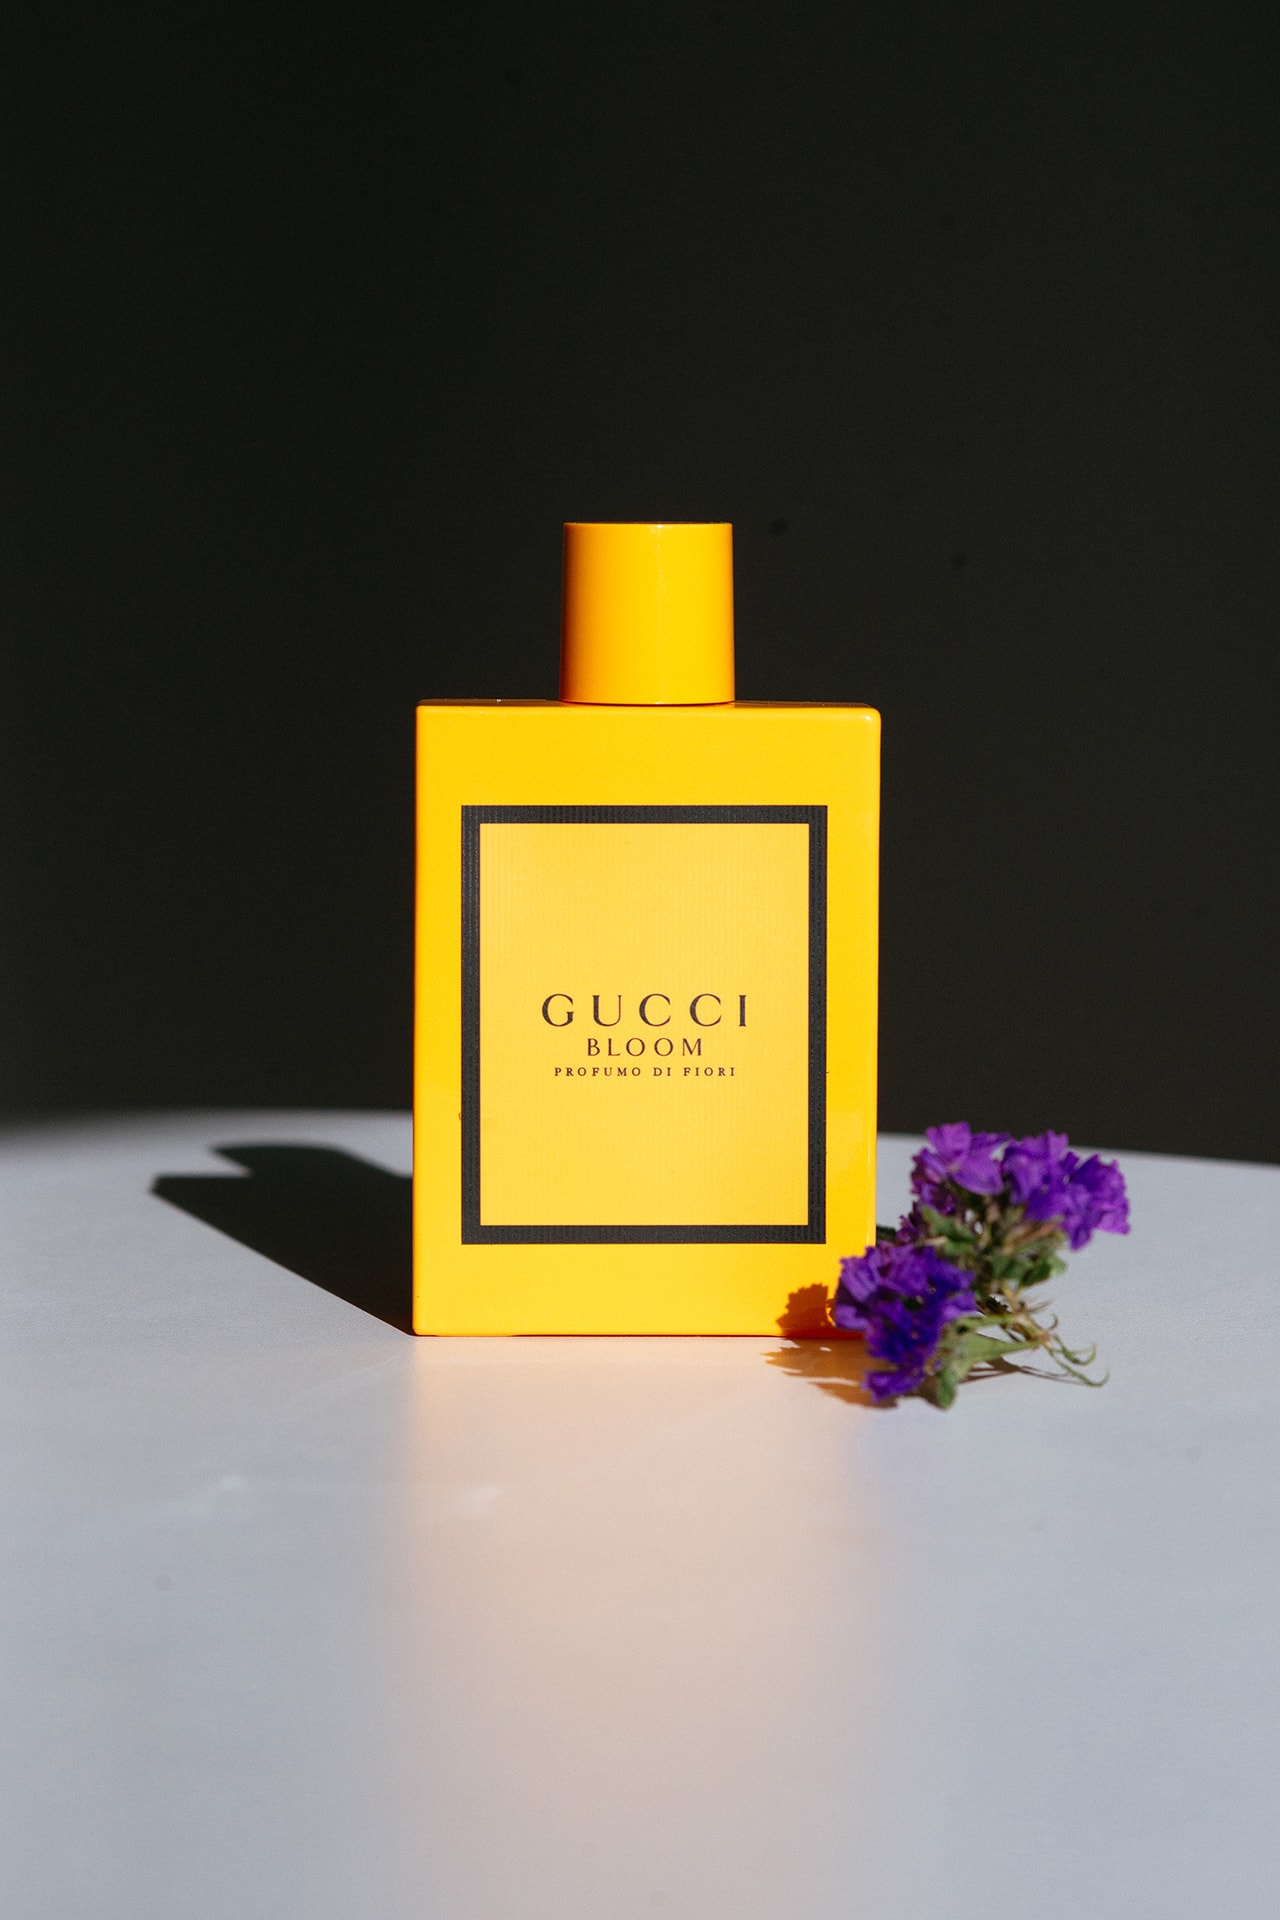 Gucci Bloom Profumo di Fiori Perfume Fragrance Yellow Bottle